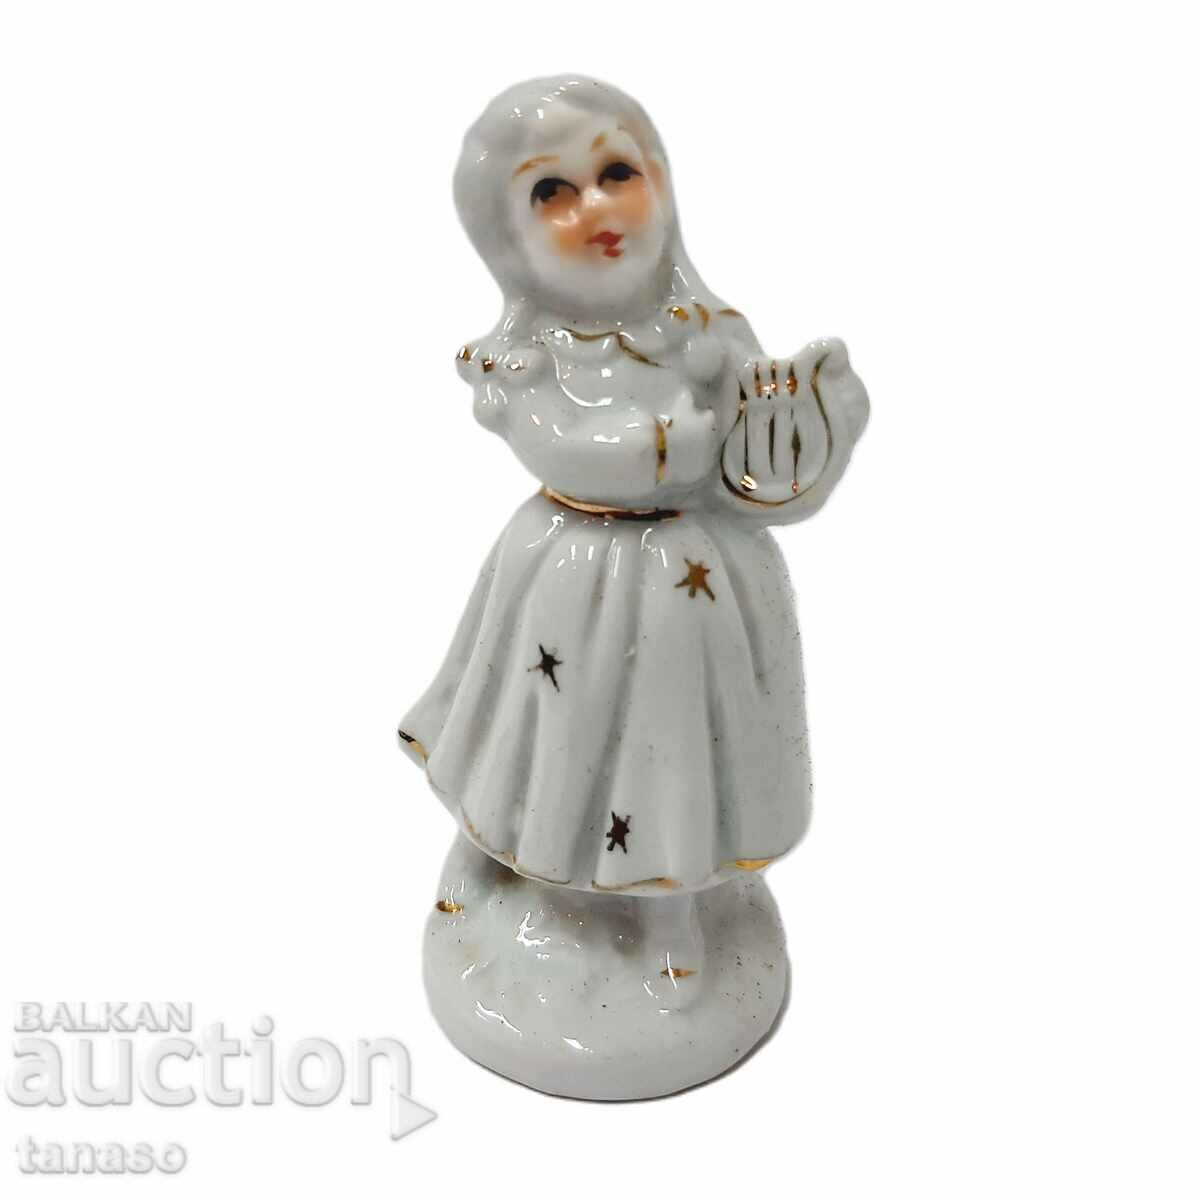 Old porcelain figurine(3.2)